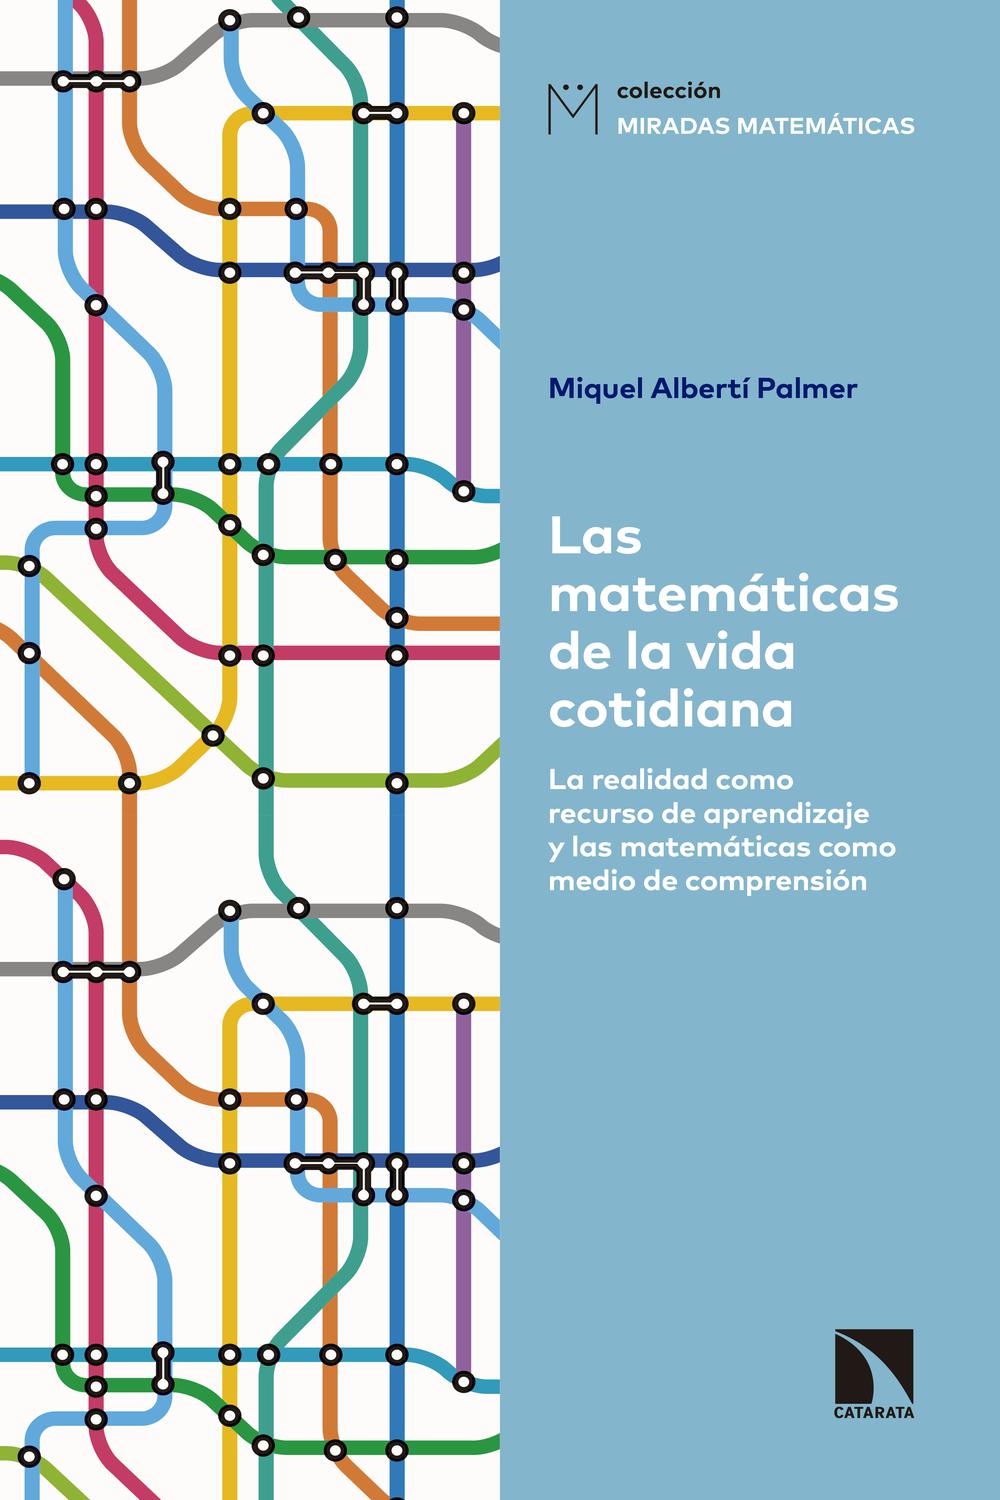 PDF] Las matemáticas la vida cotidiana by Miquel Alberti Palmer eBook | Perlego